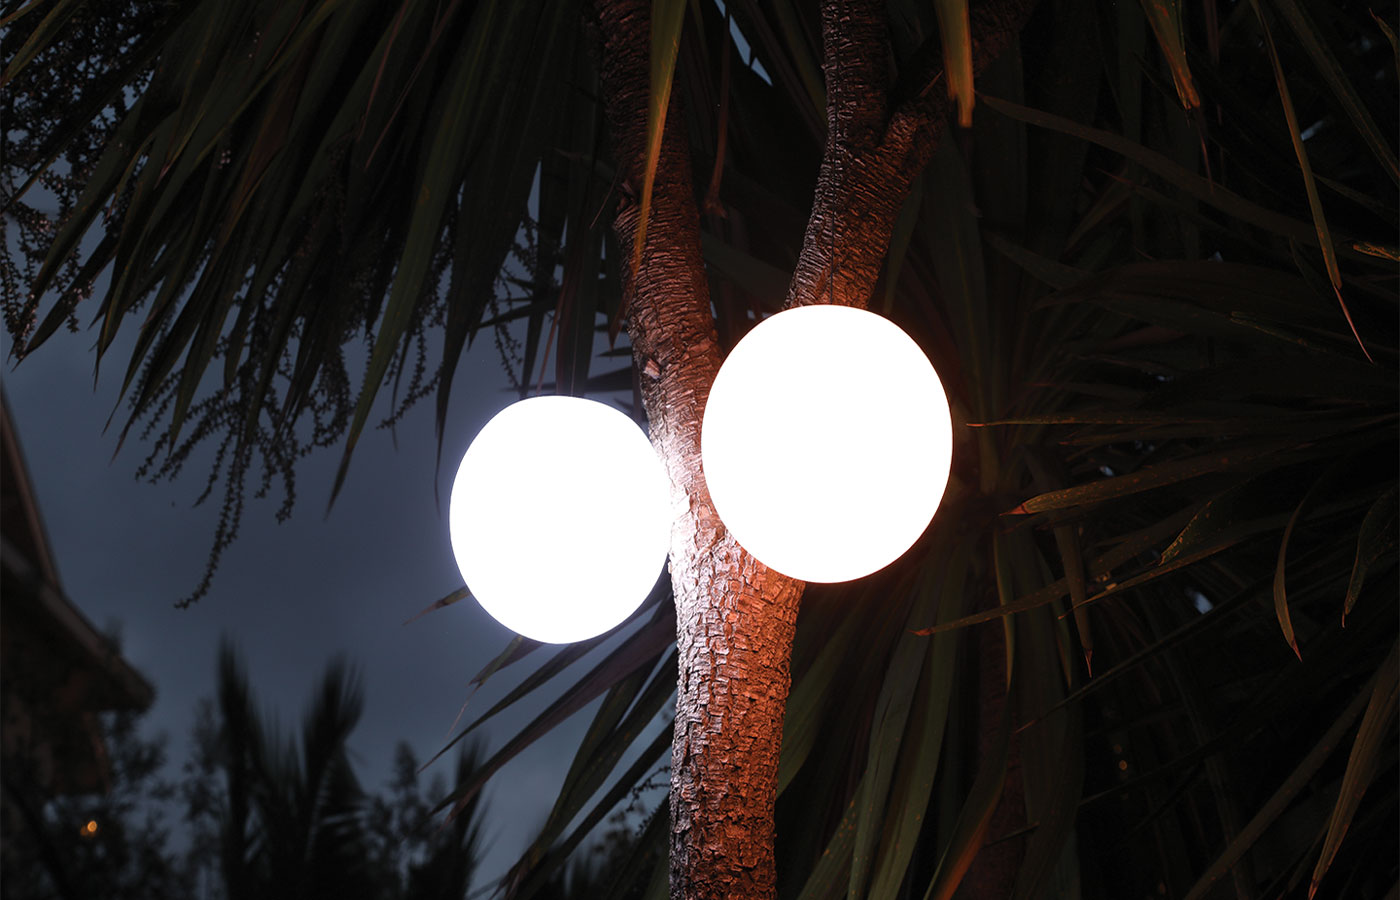 Lampe led boule suspendue – Luminaria. Découvrez notre lampe led boule suspendue Luminaria. Cette lampe d’extérieure dispose de 16 couleurs, elle trouvera sa place aussi bien dans votre intérieur que dans votre extérieur pour une ambiance cocooning. Elle permet d'embellir votre extérieur.